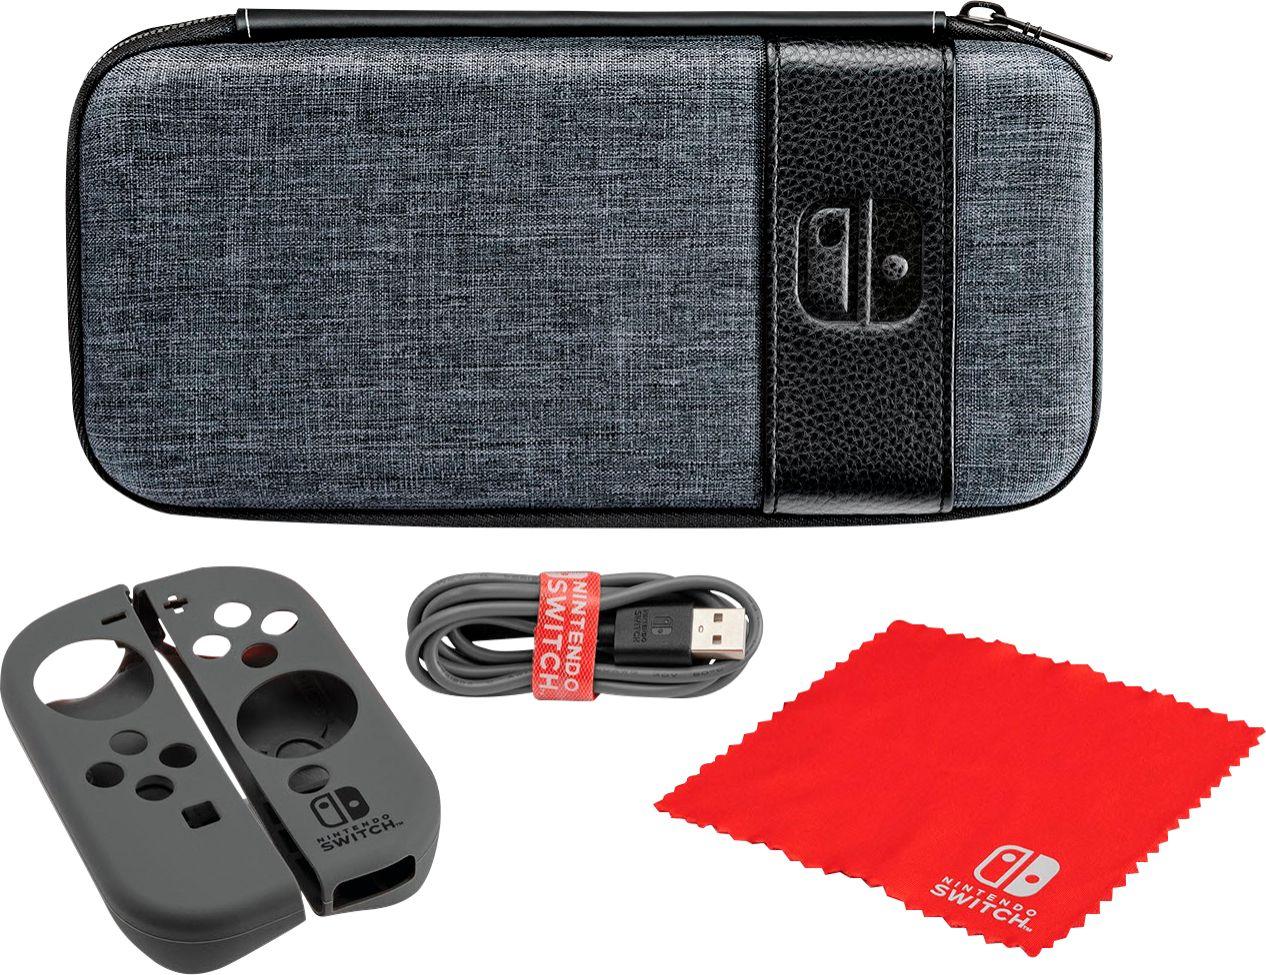 Nintendo Switch Elite Edition Starter Kit for $14.99